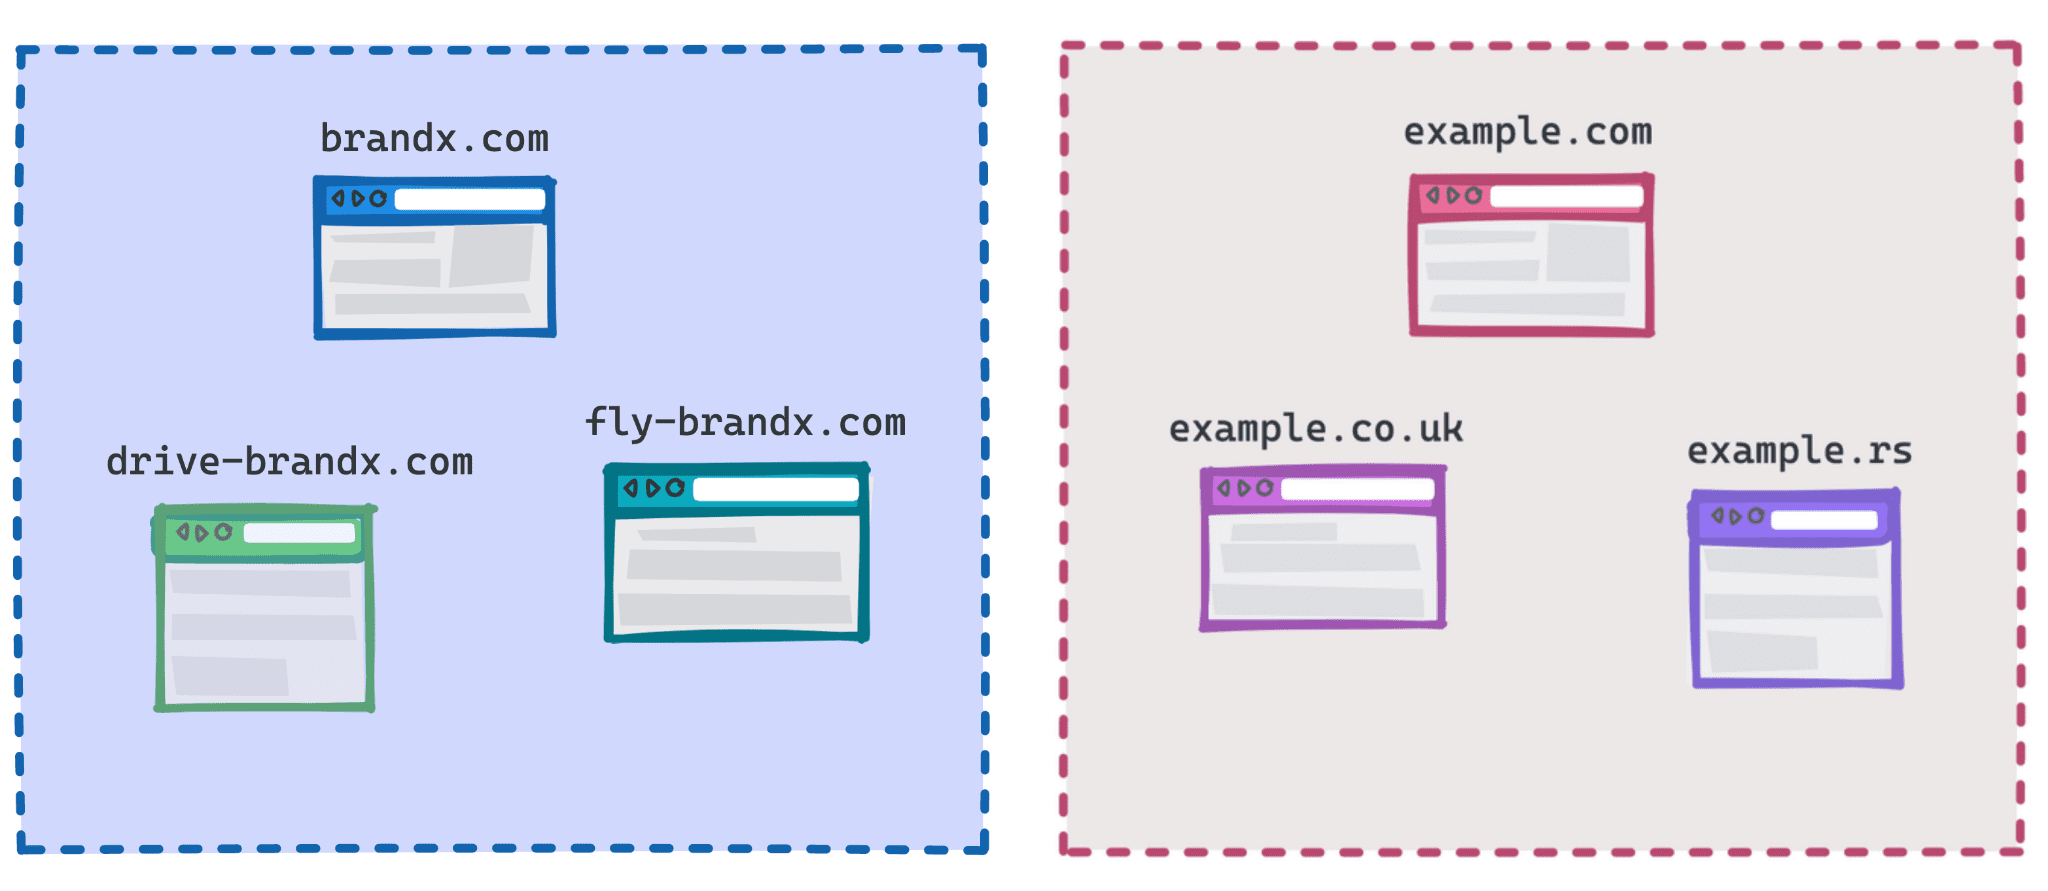 डायग्राम में Brandx.com, Fly-brandx.com, और drive-brandx.com को एक ग्रुप के तौर पर और example.com, example.rs, example.co.uk को दूसरे ग्रुप के तौर पर दिखाया गया है.